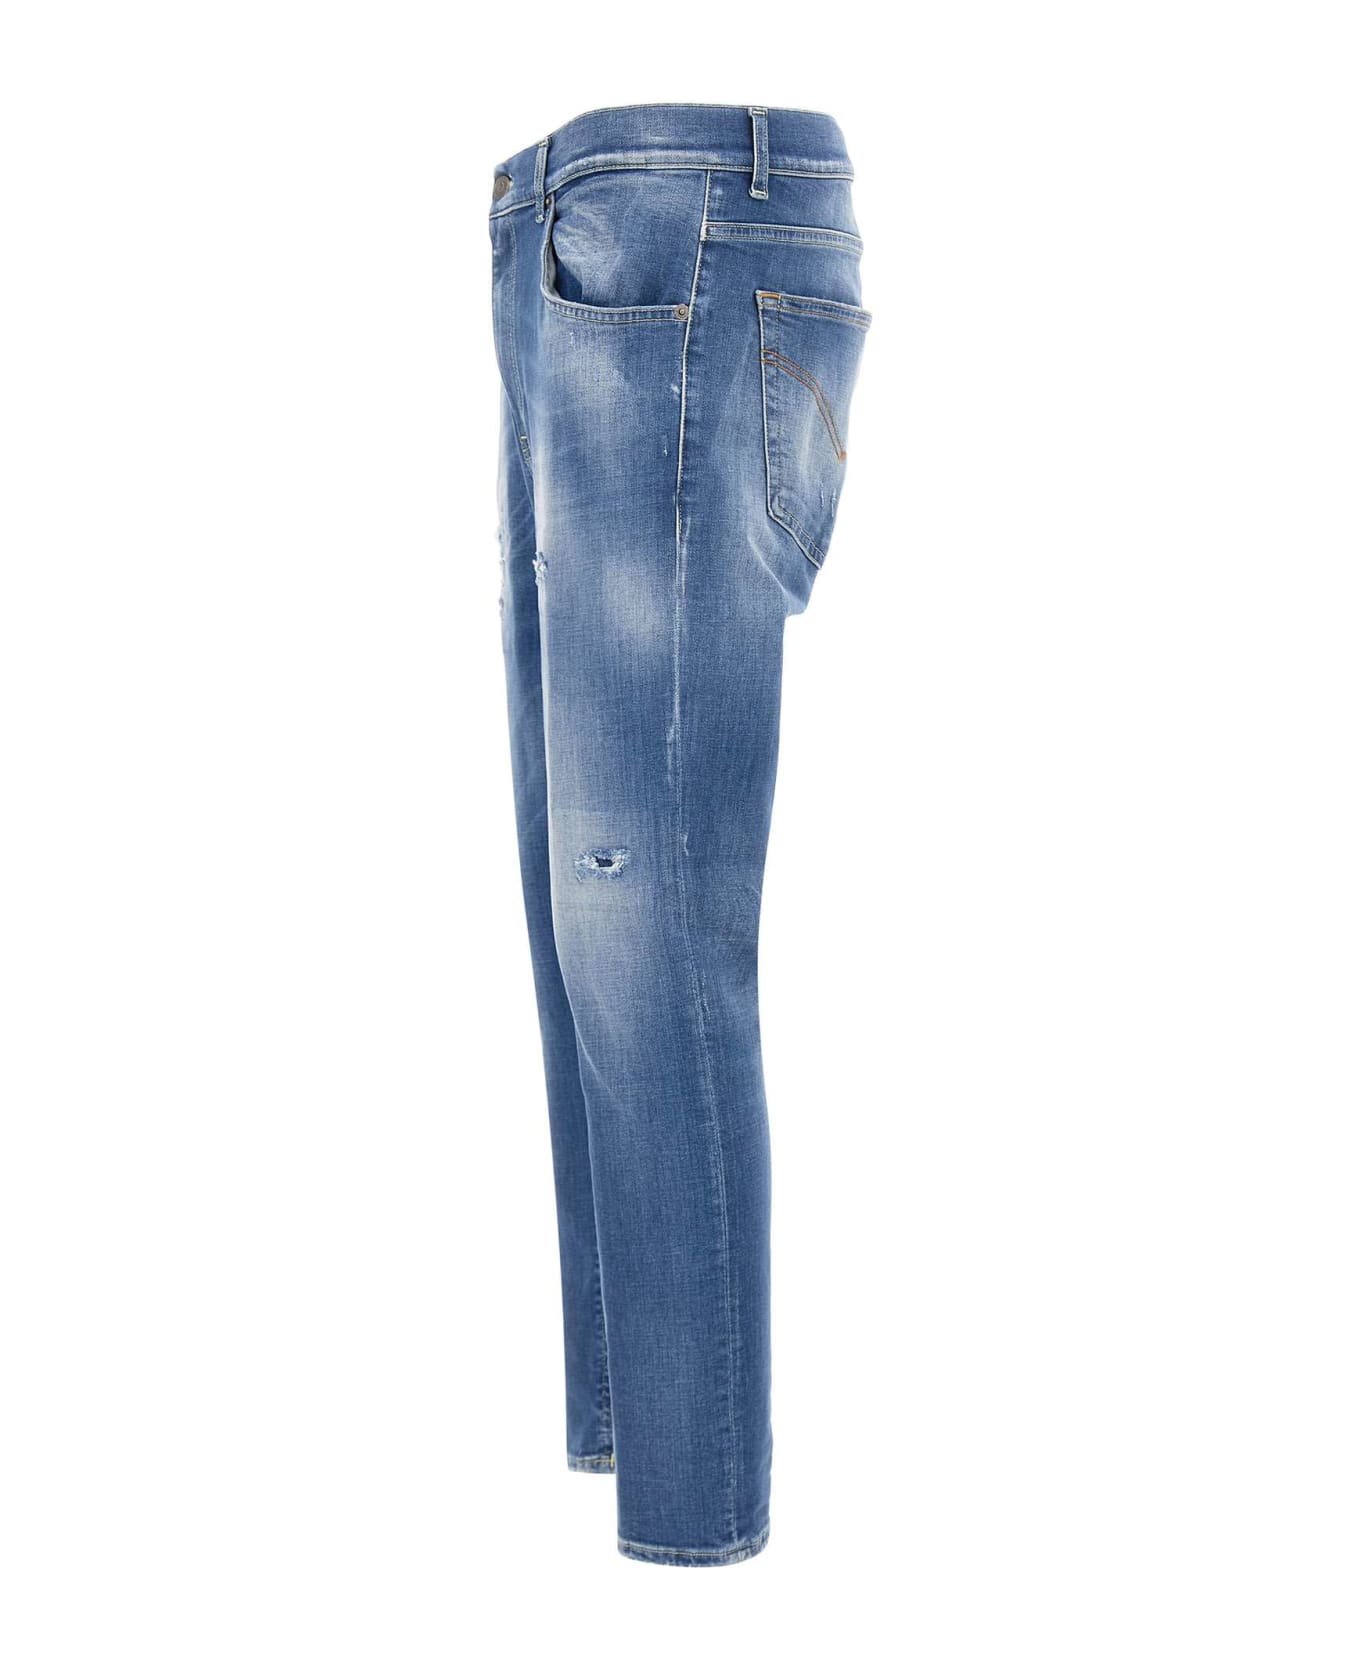 Dondup "alex"jeans - BLUE